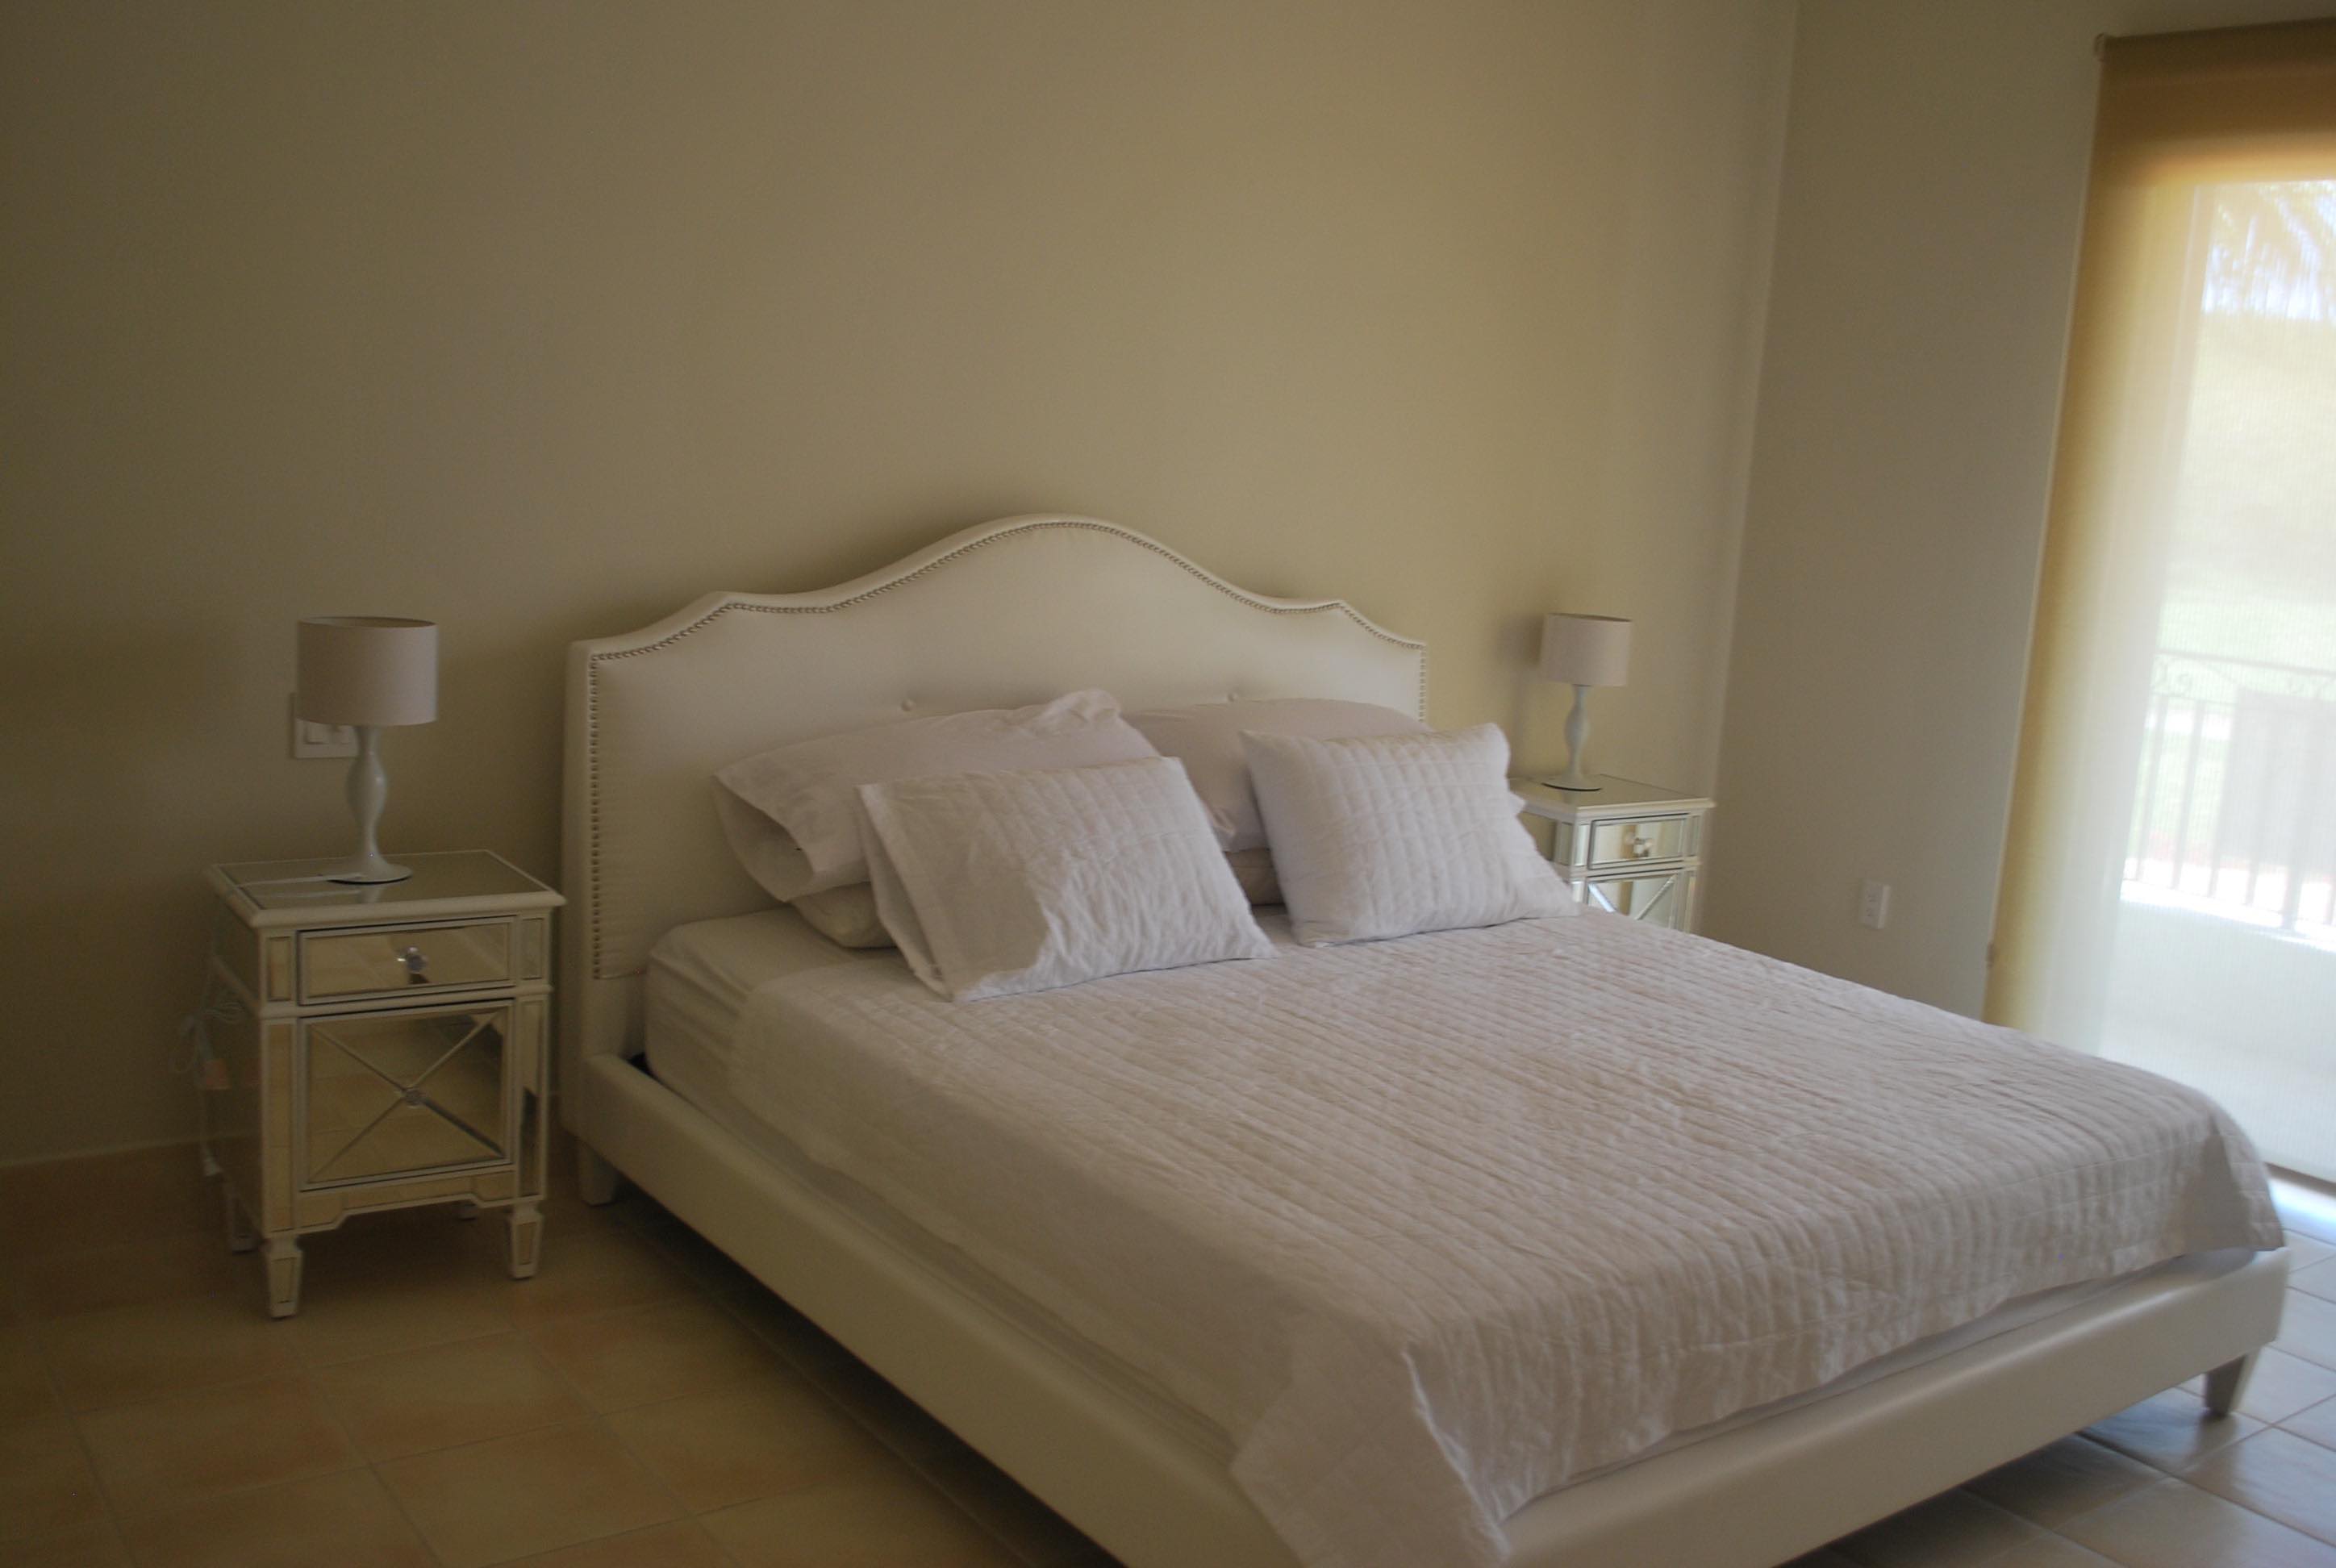 Paseo de las Casas PANAMA,3 Bedrooms Bedrooms,3 BathroomsBathrooms,Apartment,CASA ESMERALDA,2,1072